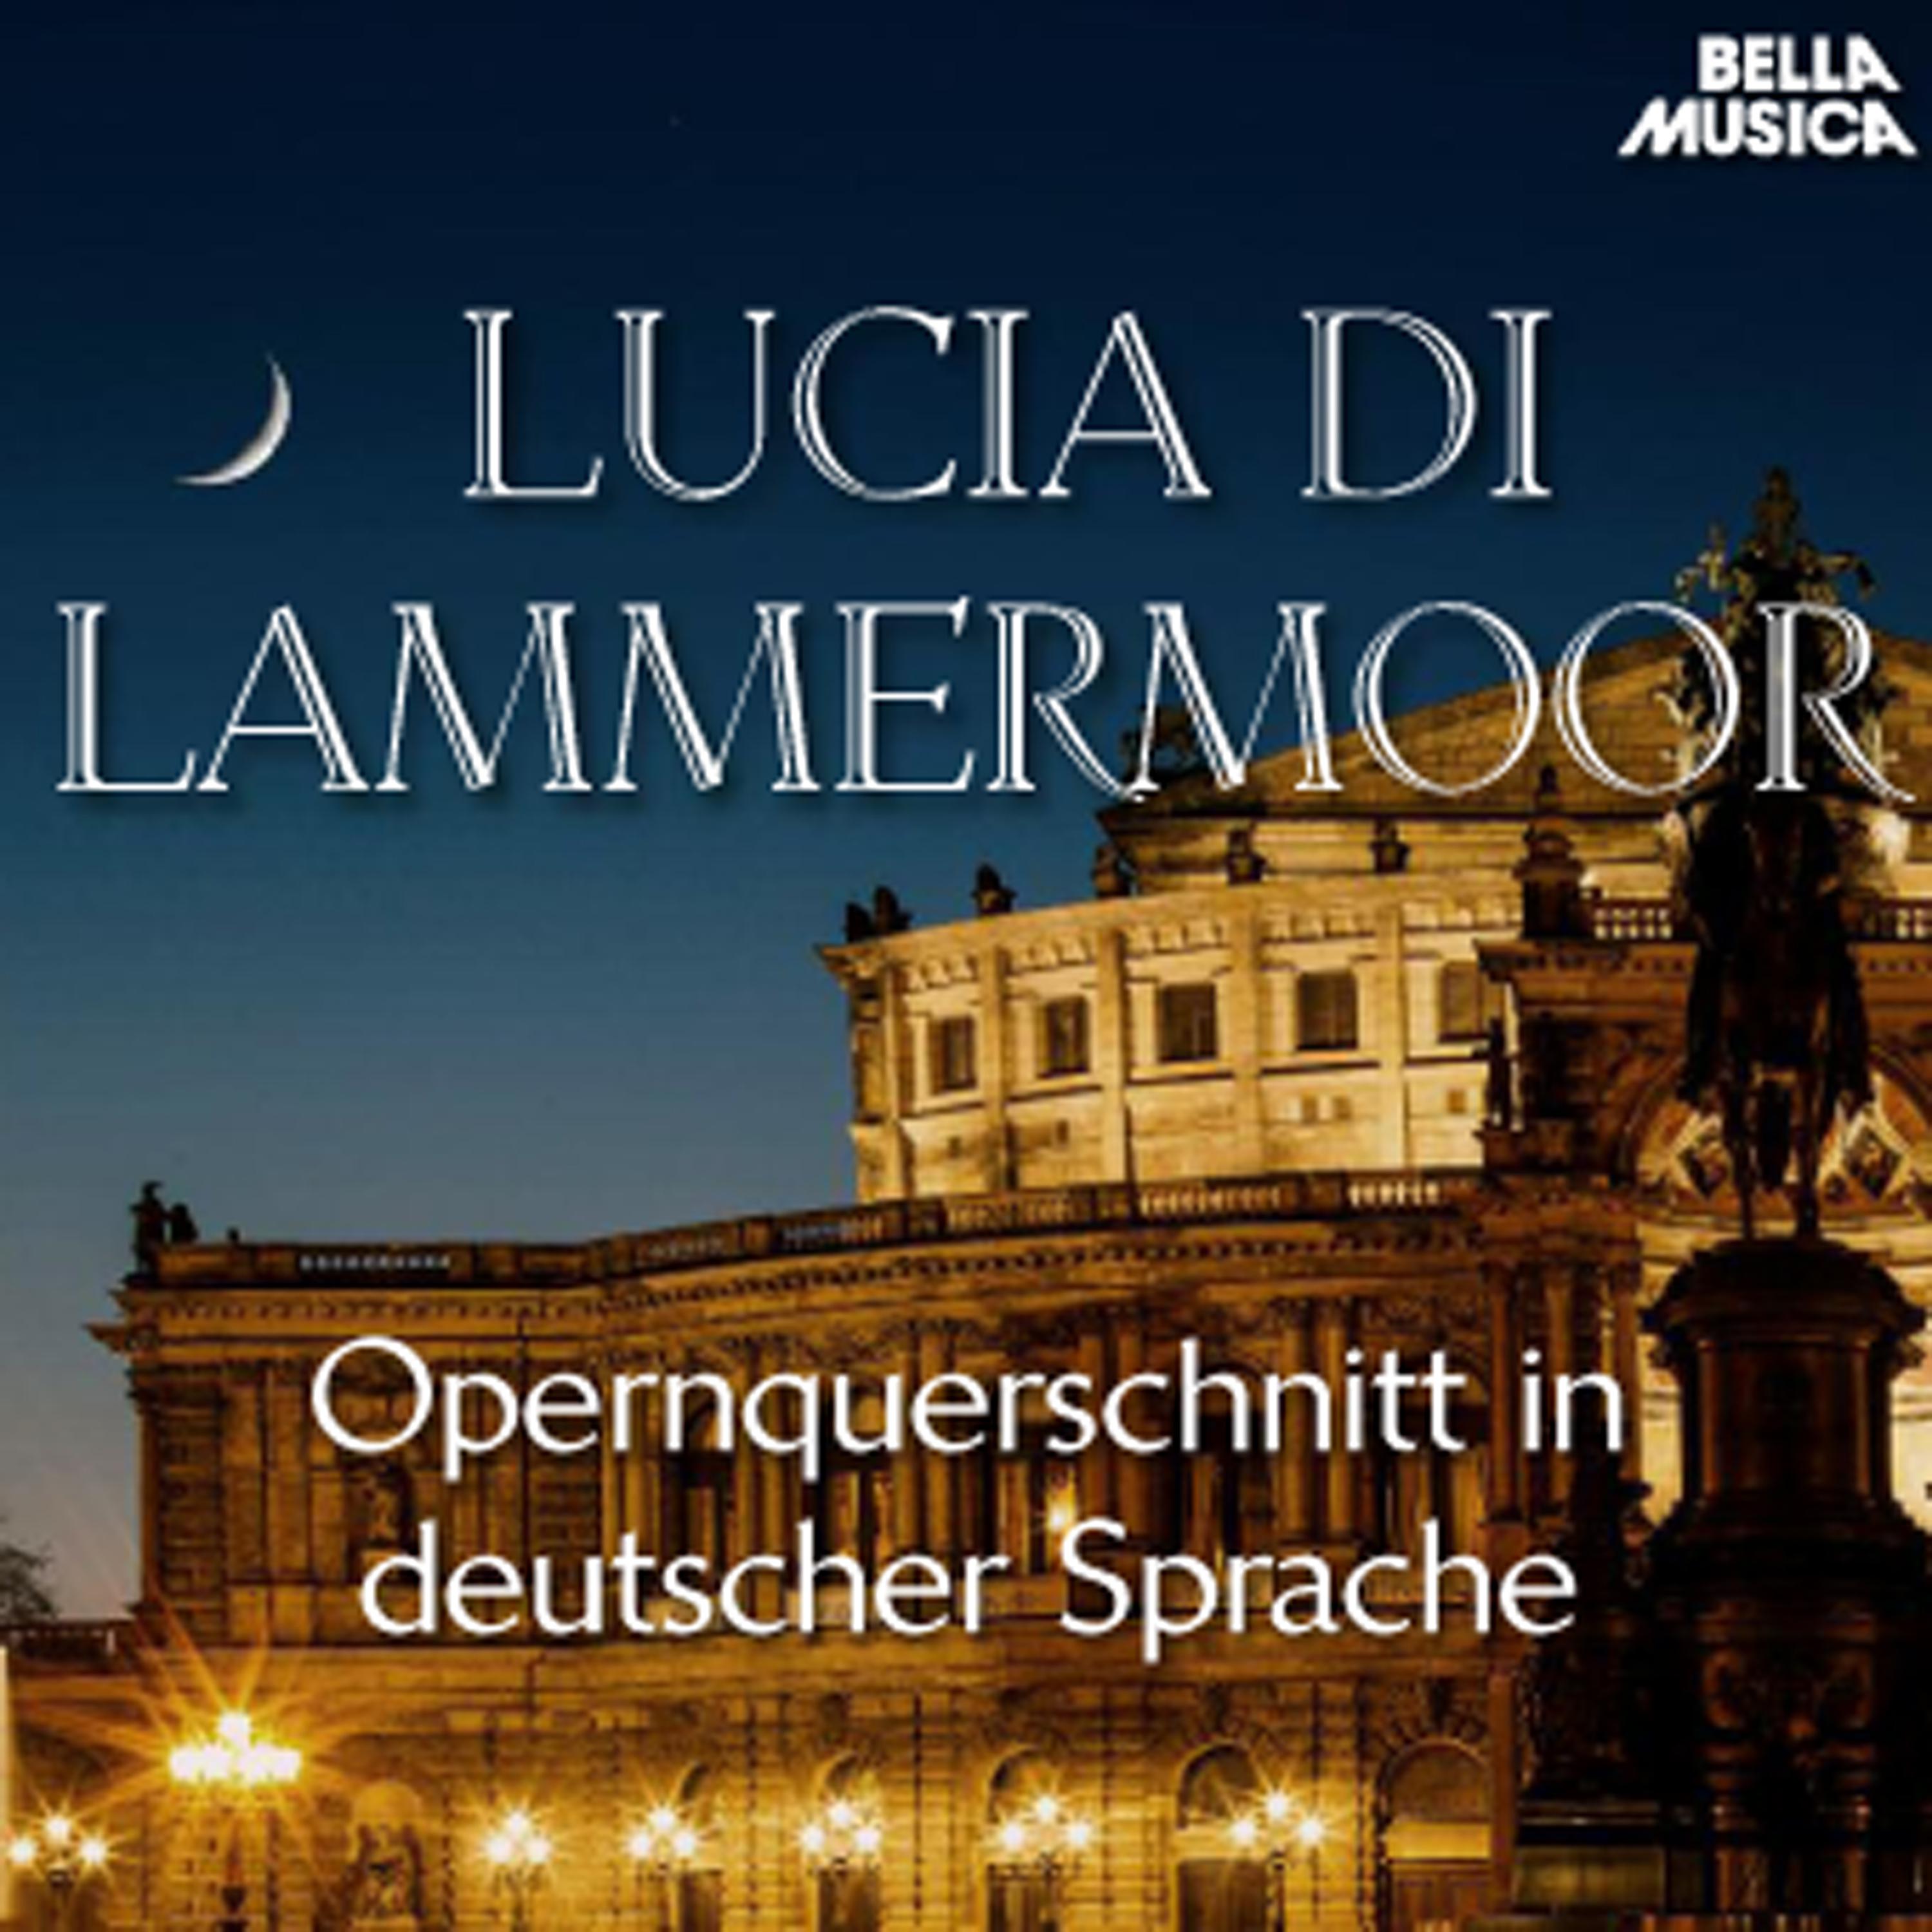 Lucia di Lammermoor: Freudigen Jubelruf lasst heut' erklingen  Lasst diese Jubelt ne schweigen